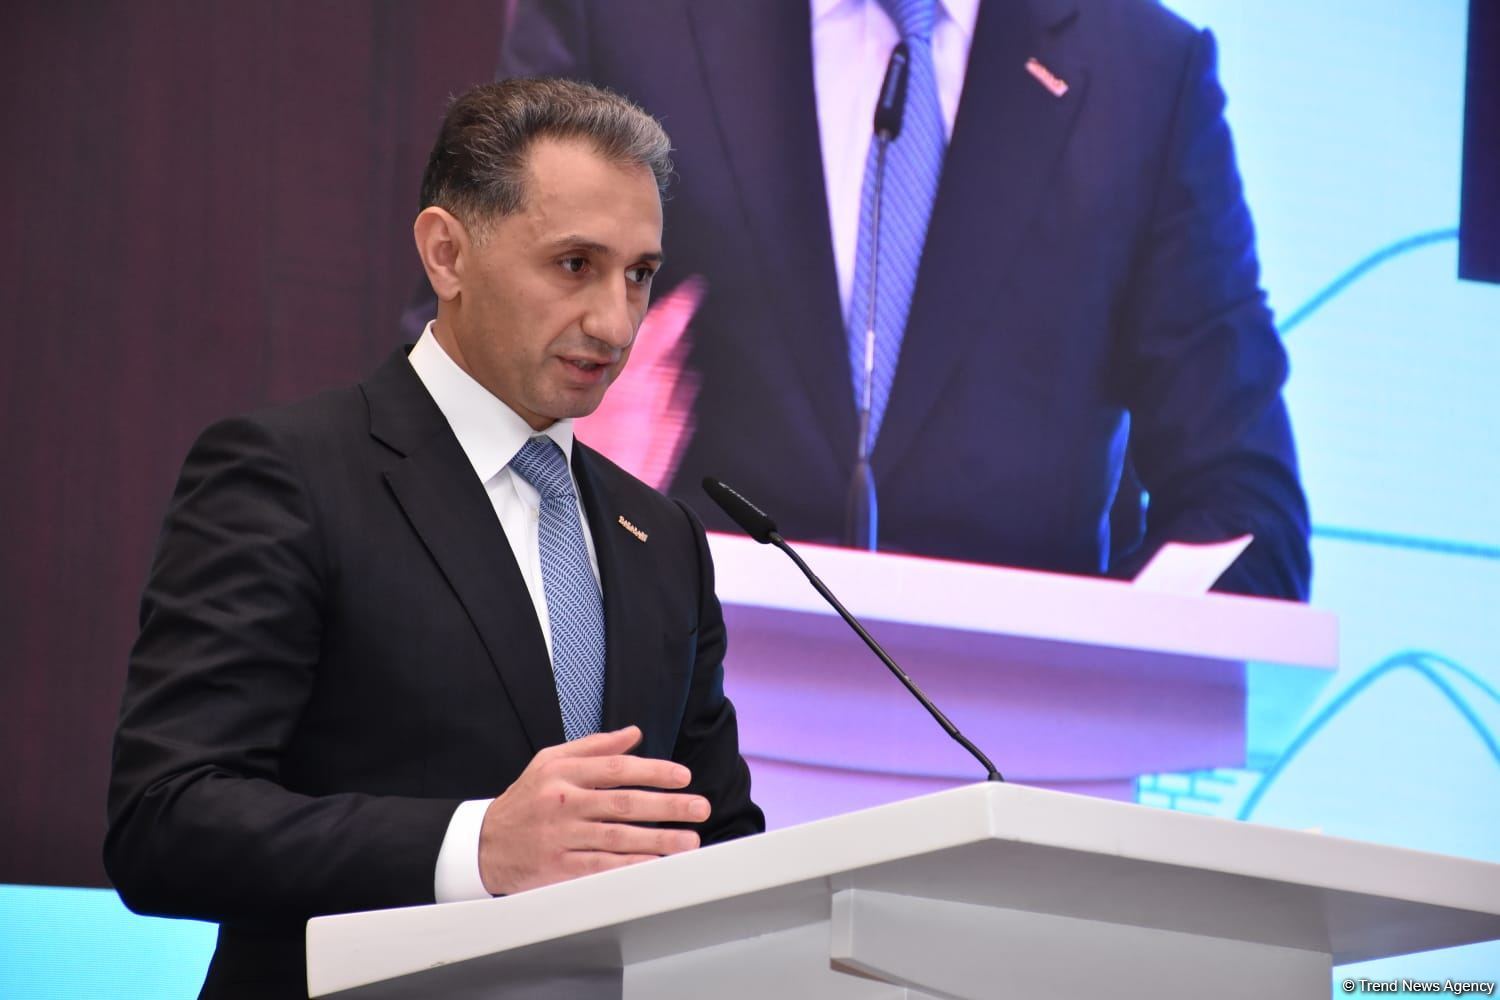 Между Азербайджаном и Грузией существует успешное инвестиционное сотрудничество - министр